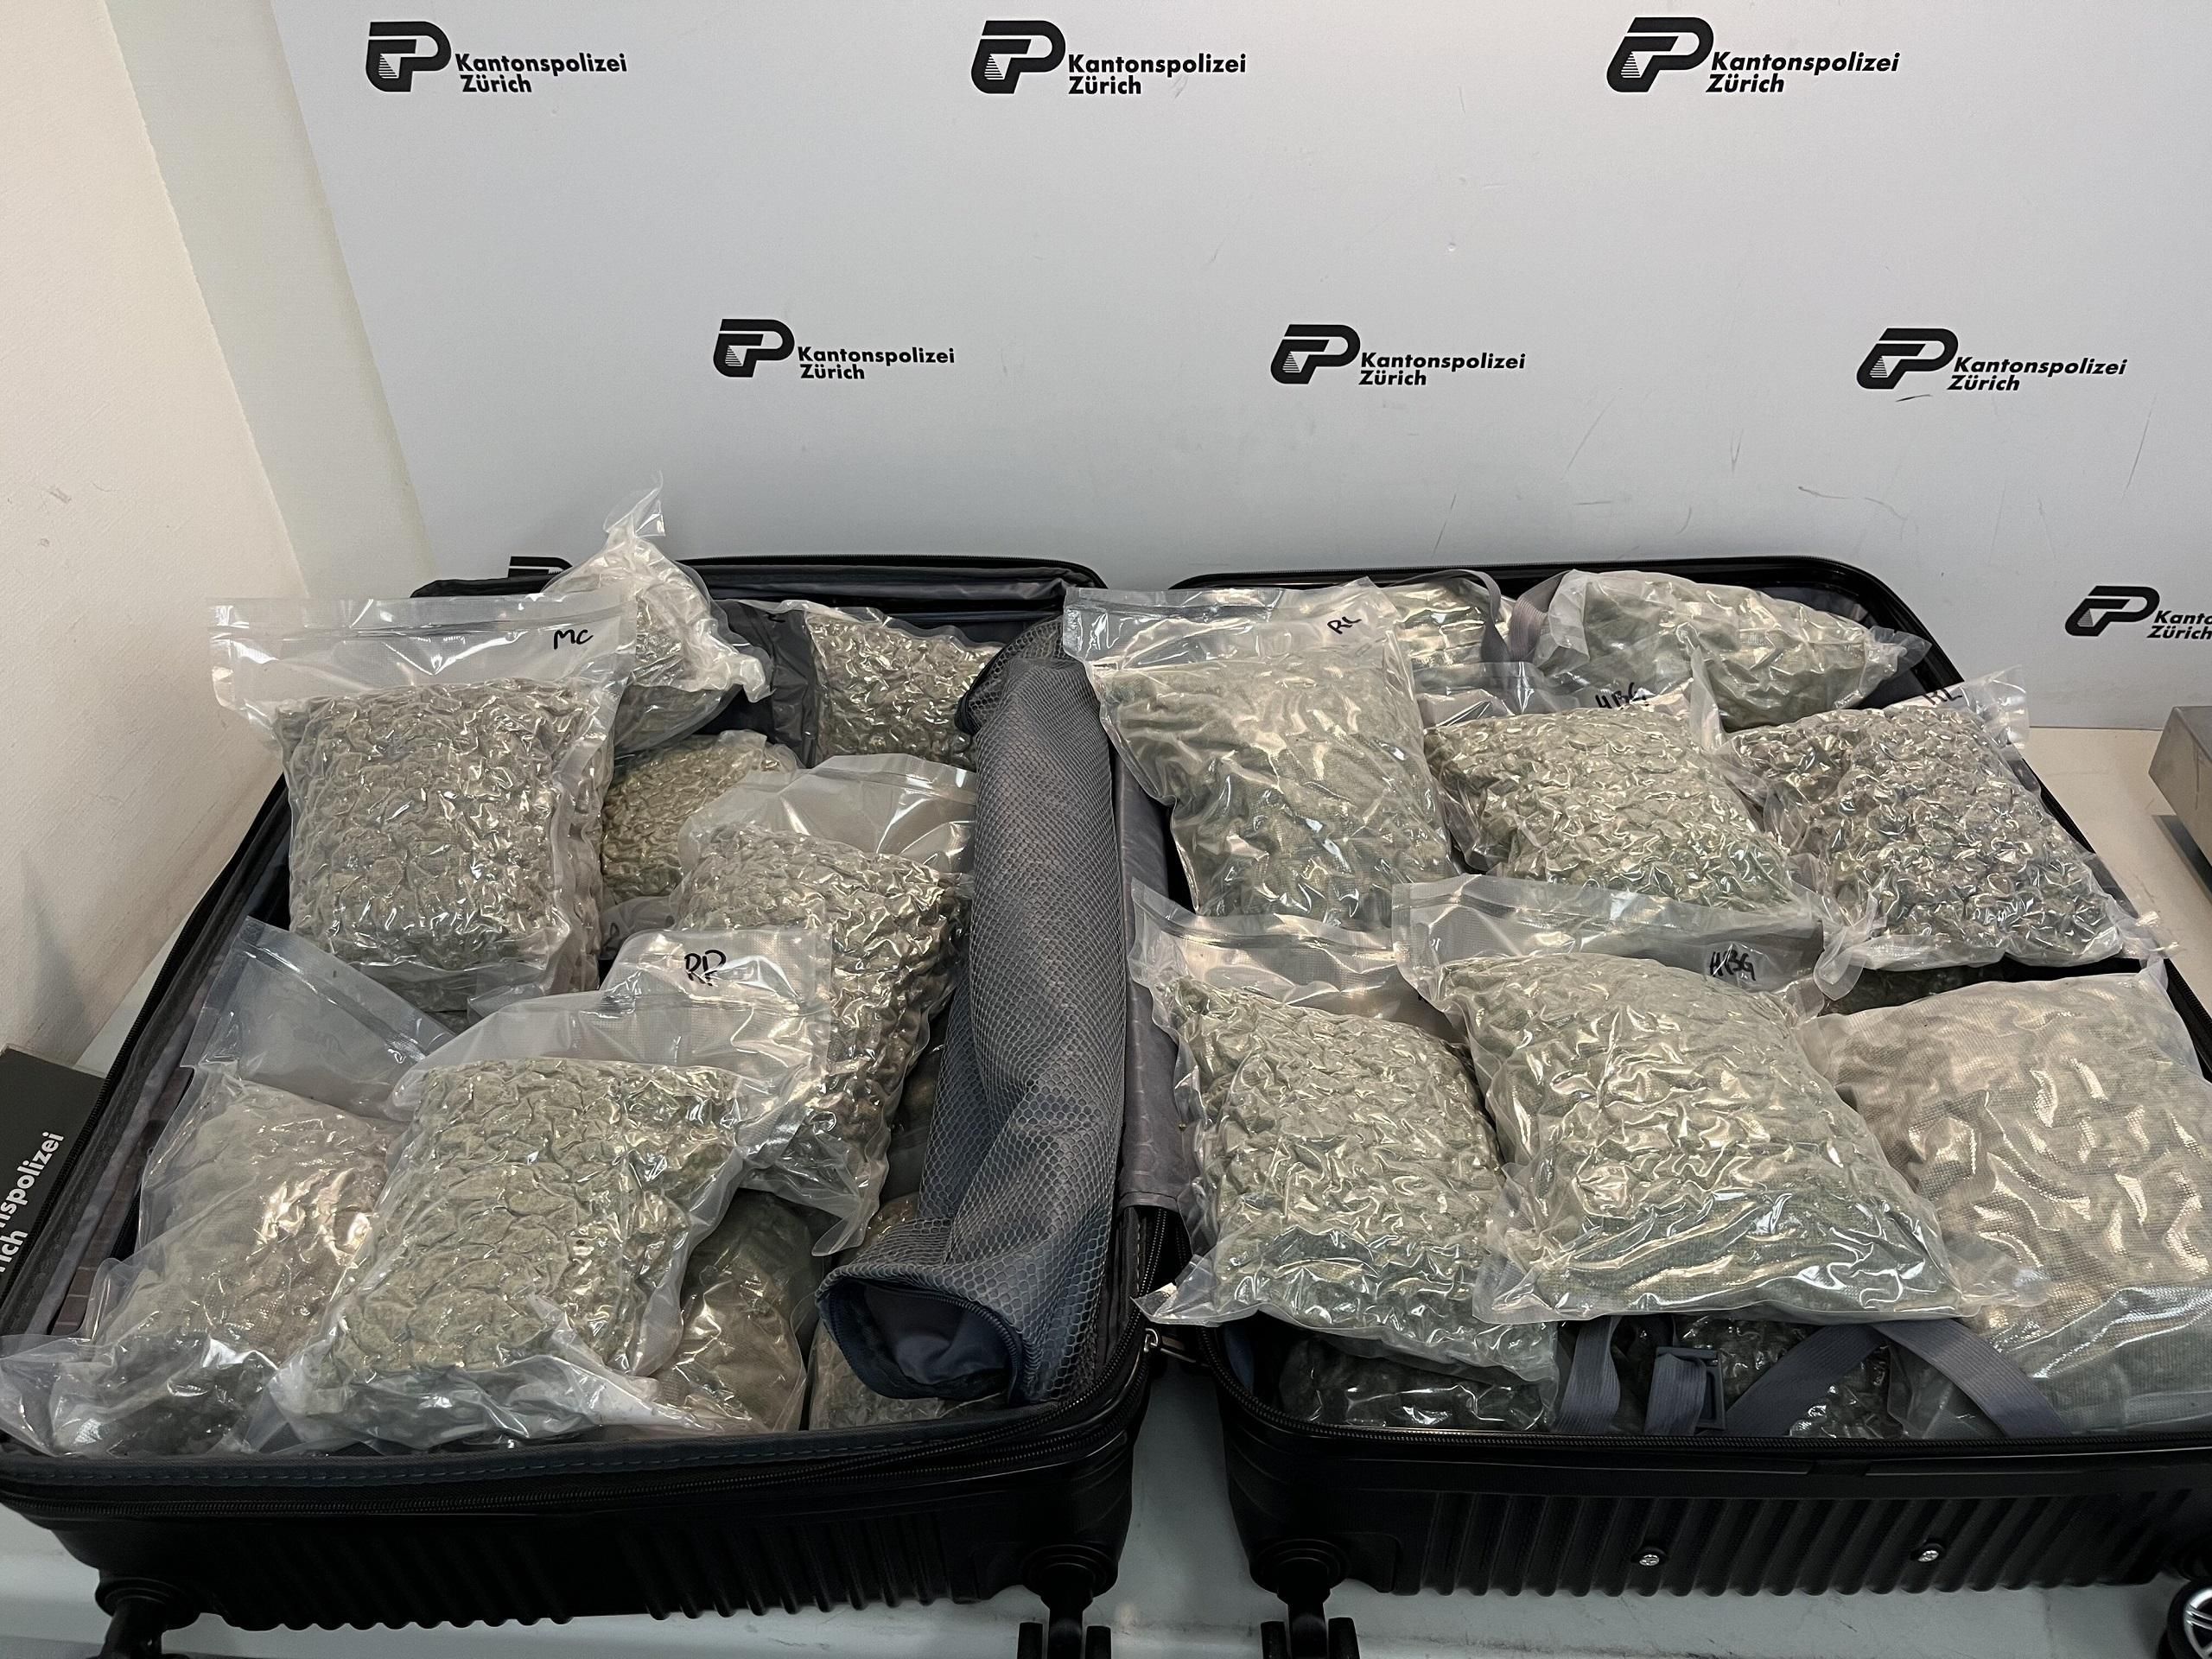 Deux passeuses pincées avec des valises remplies de drogue